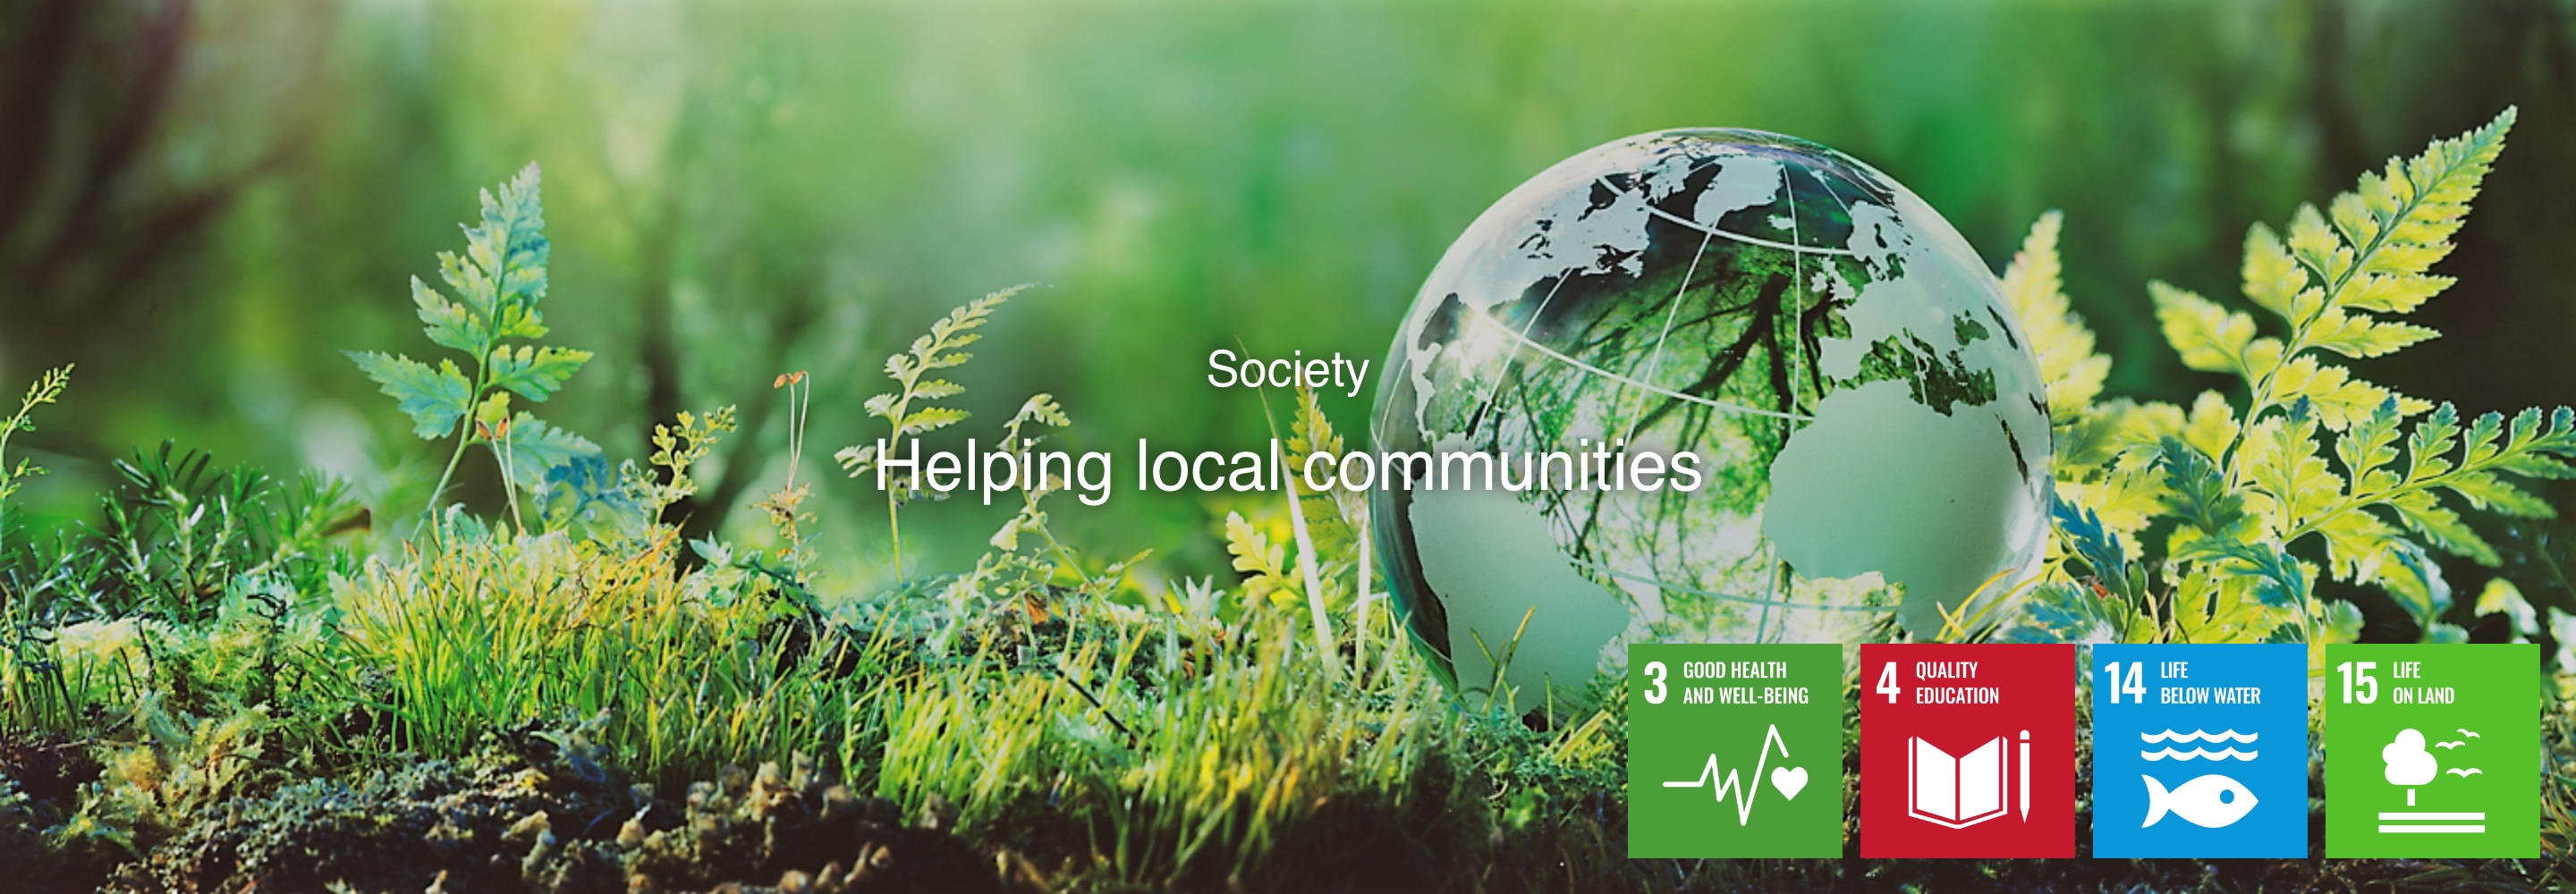 Samfund Hjælp til lokale samfund